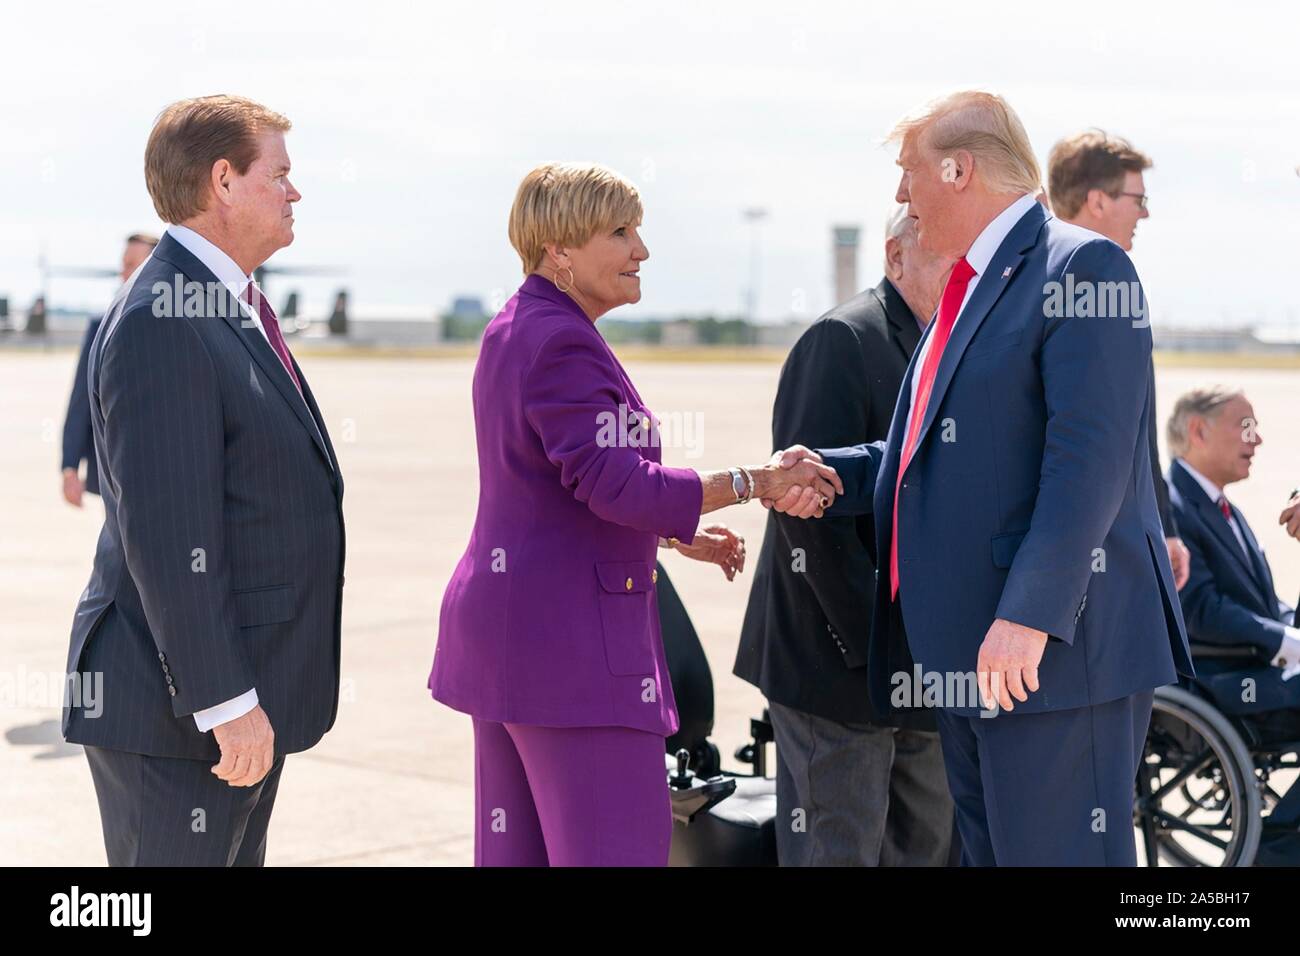 Us-Präsident Donald Trump ist von Fort Worth Bürgermeister Betsy Preis, Zentrum begrüßt, nach dem Aussteigen Air Force One in gemeinsamen Mindestreservebasis Fort Worth Oktober 17, 2019 in Fort Worth, Texas. Stockfoto